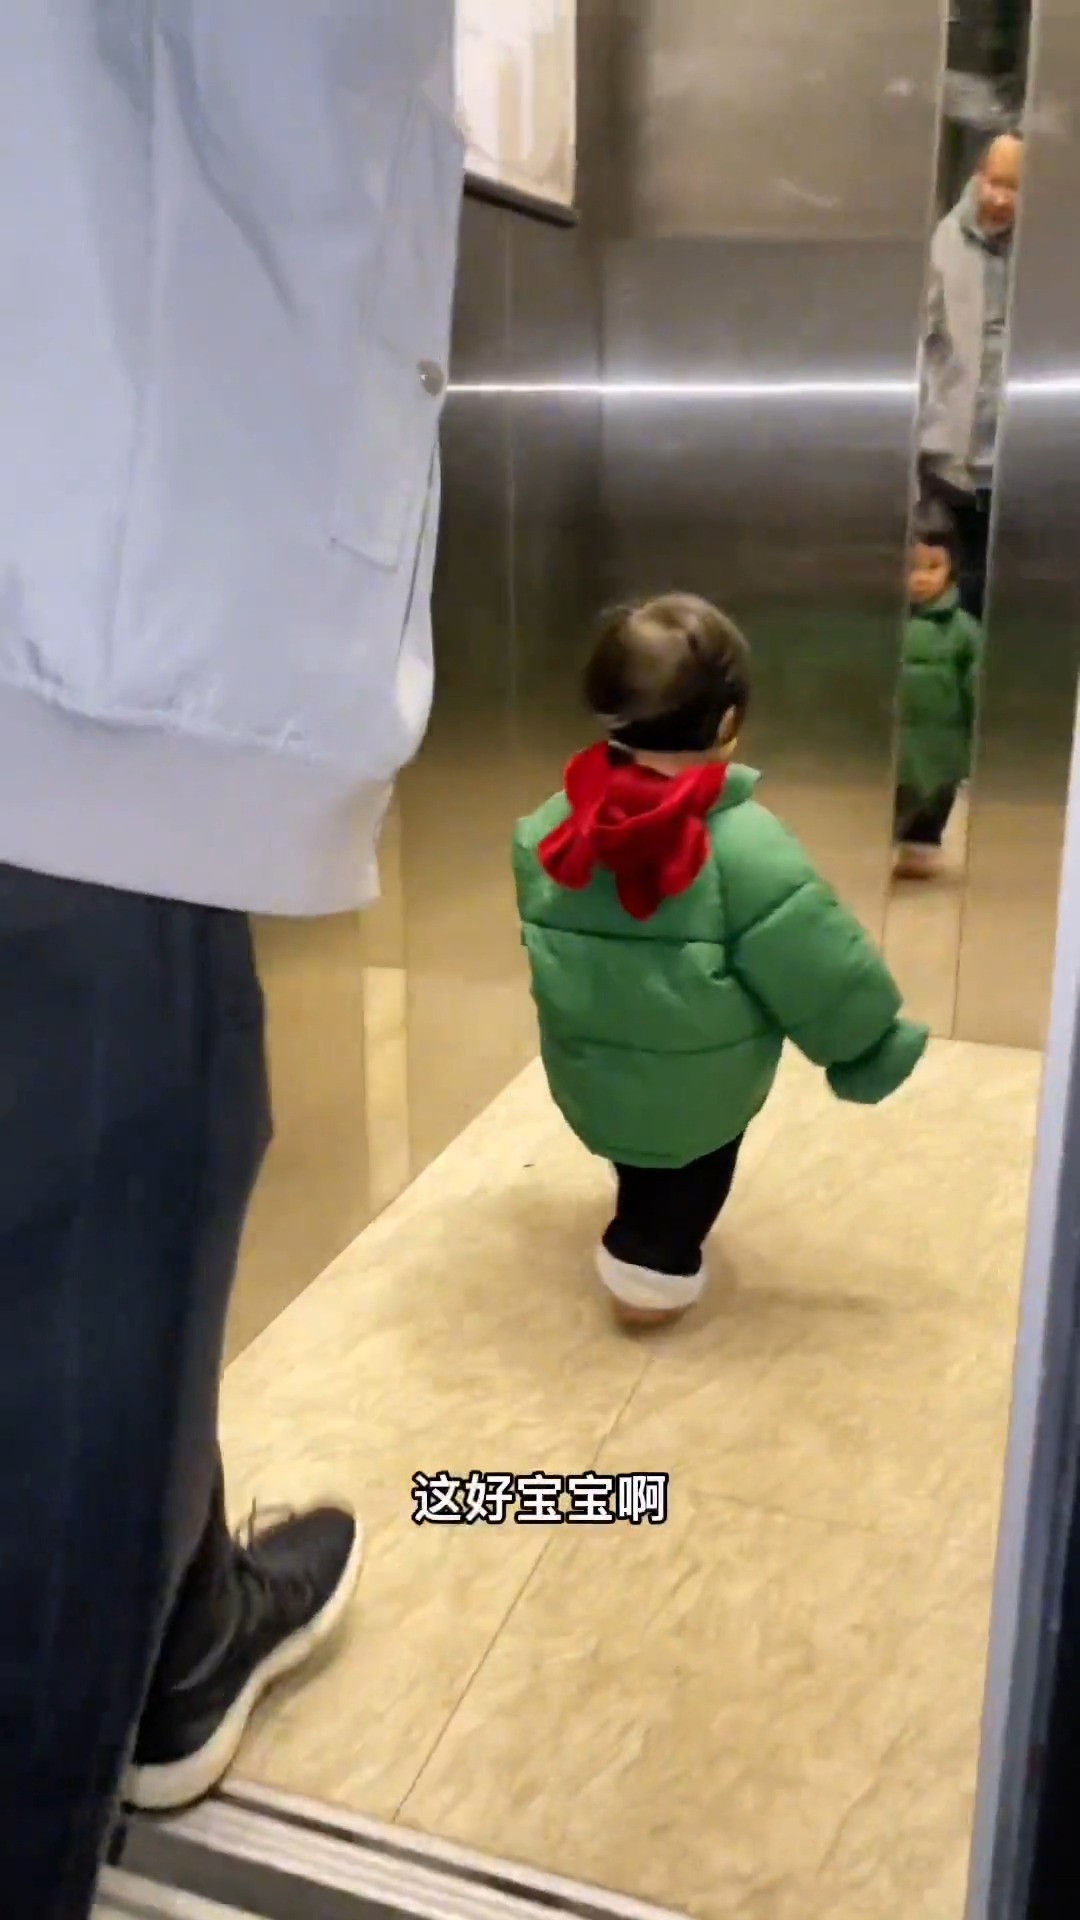 一定要注意宝宝不能一个人坐电梯，有时候宝宝看电梯门开了，一个人走进去，很险孩子安全宝宝成长爸爸带娃